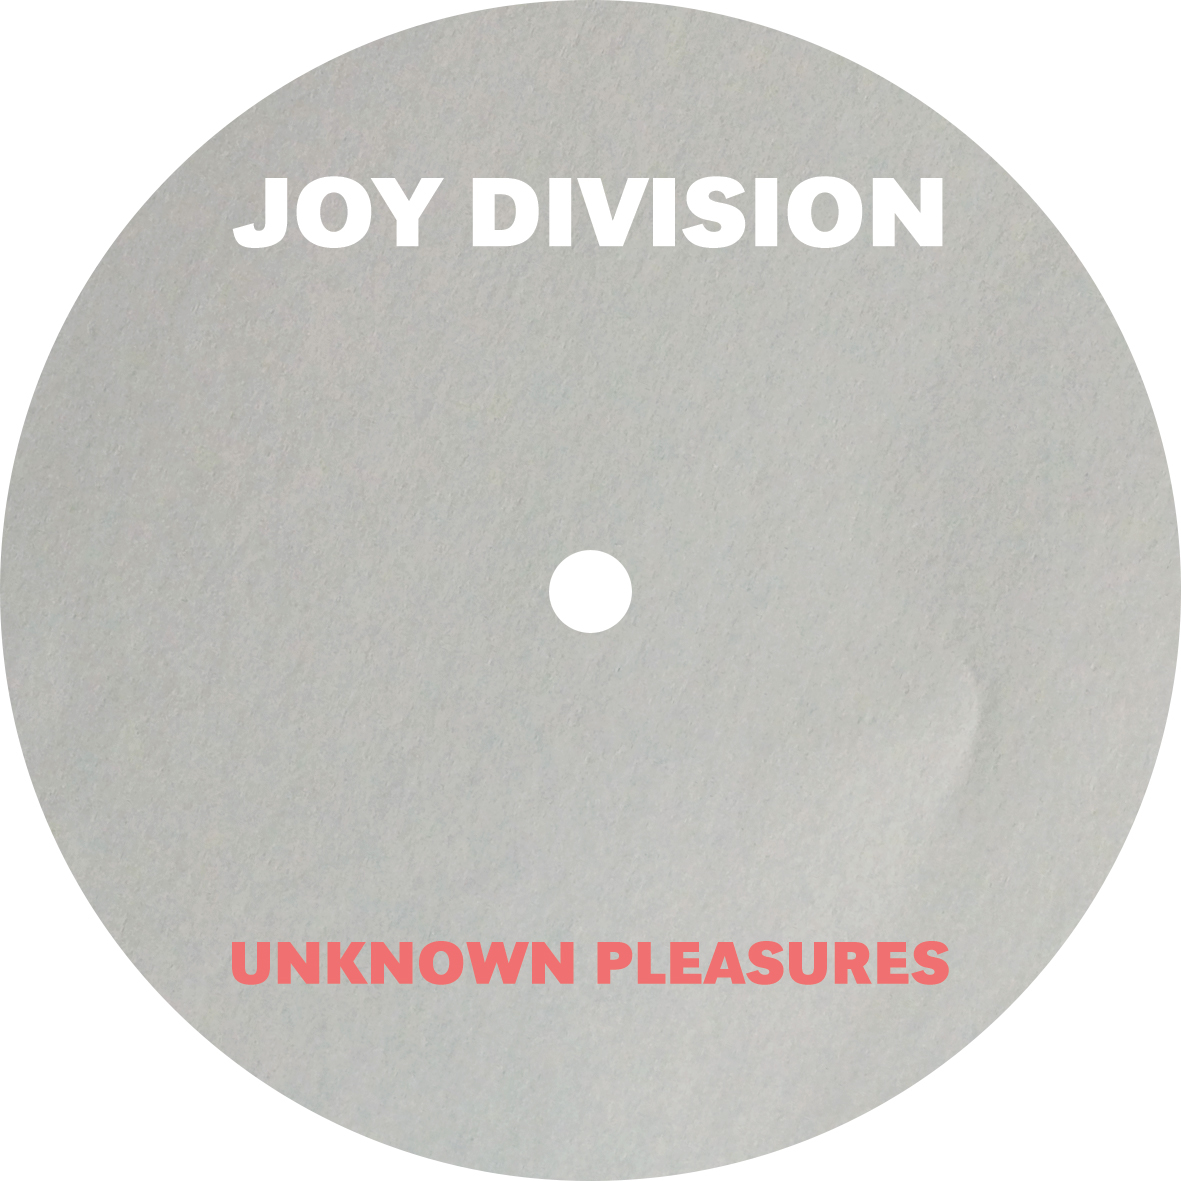 grafist Grafist 18 joy division iconic Album cover iconic album cover unknown pleasures vinyl album cover